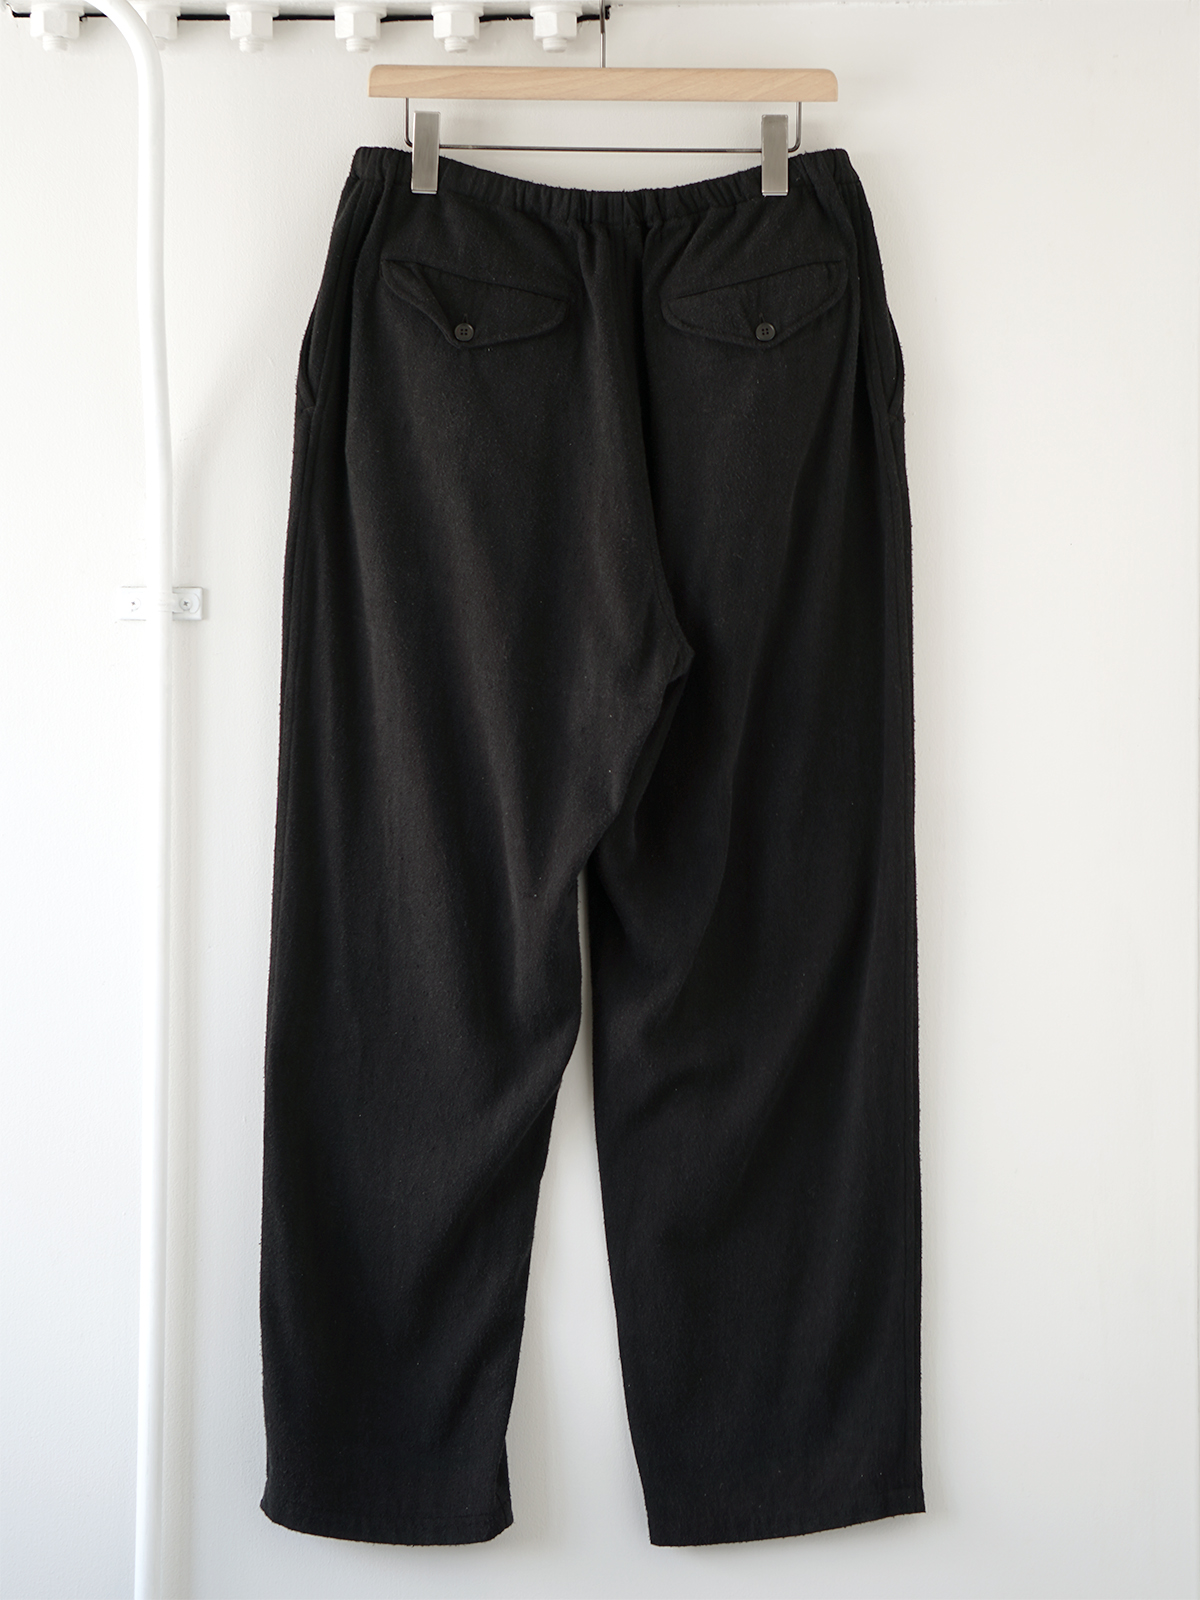 ポーリン様 COMOLI Wool Napping pants サイズ1 - パンツ